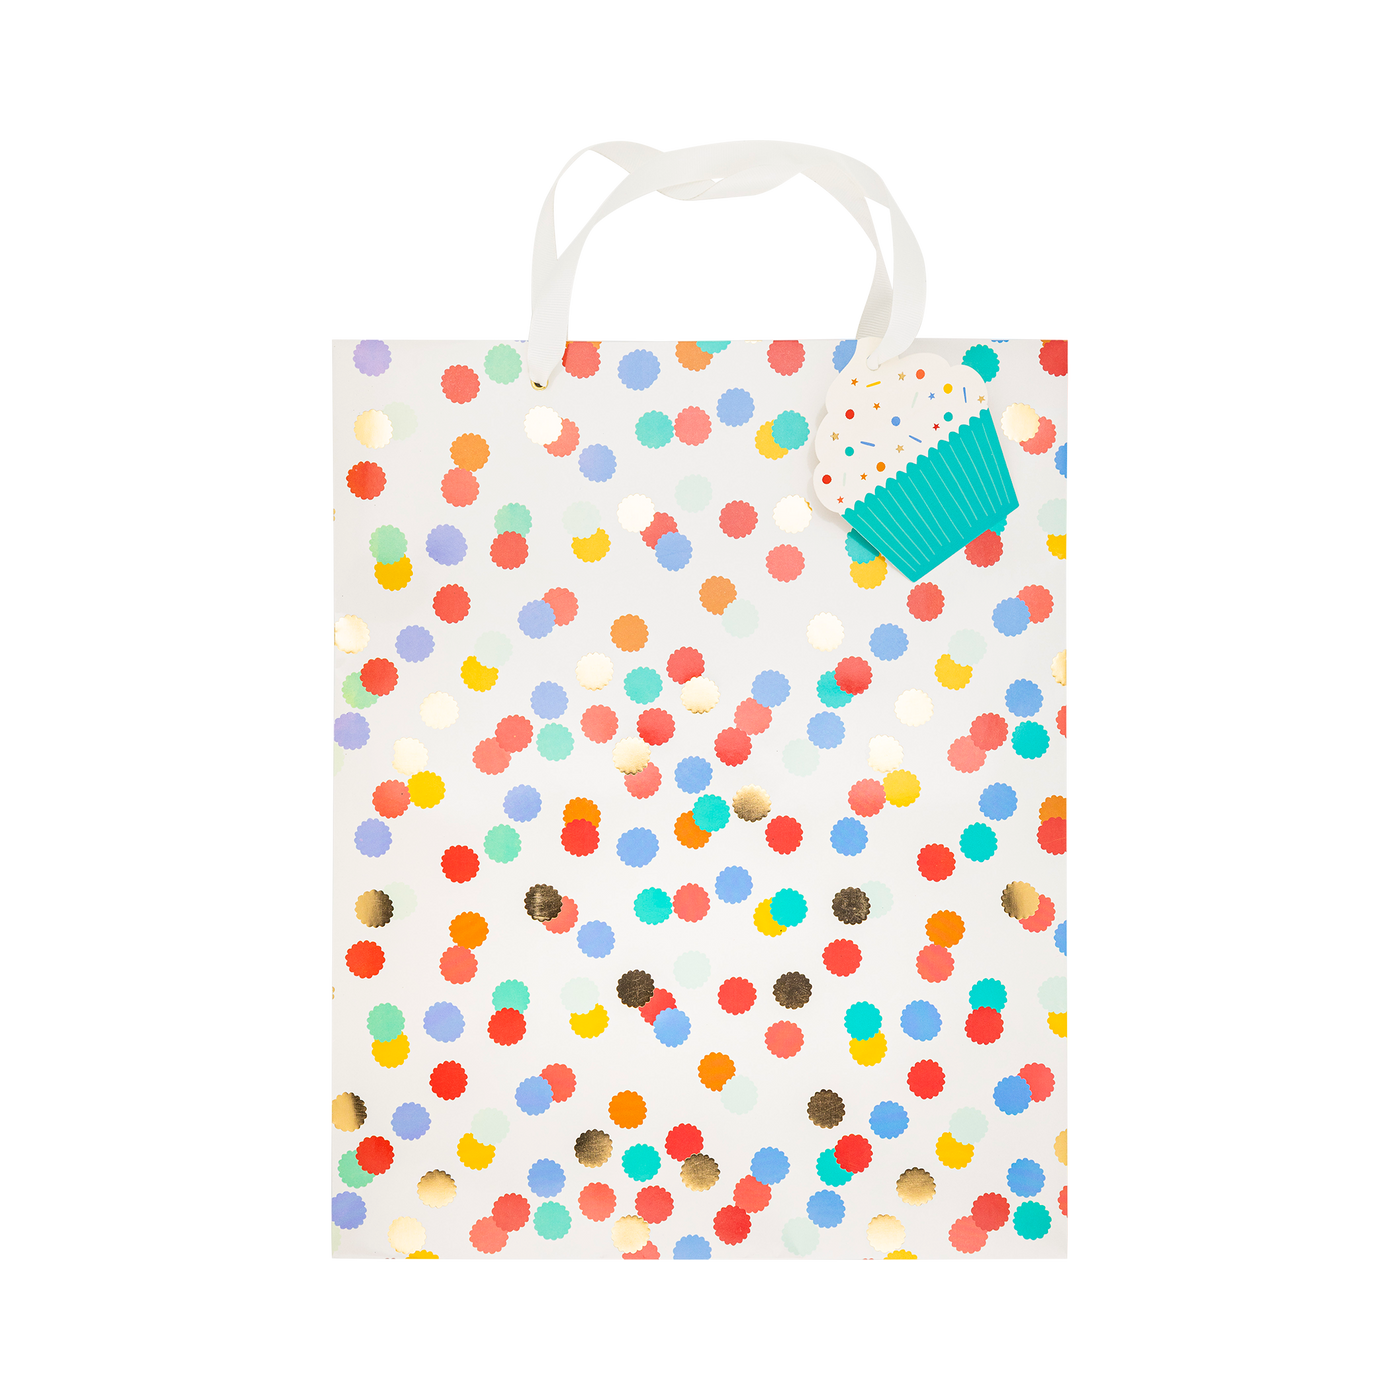 PLBDY12 - Birthday Gift Bag Set - 3 sizes